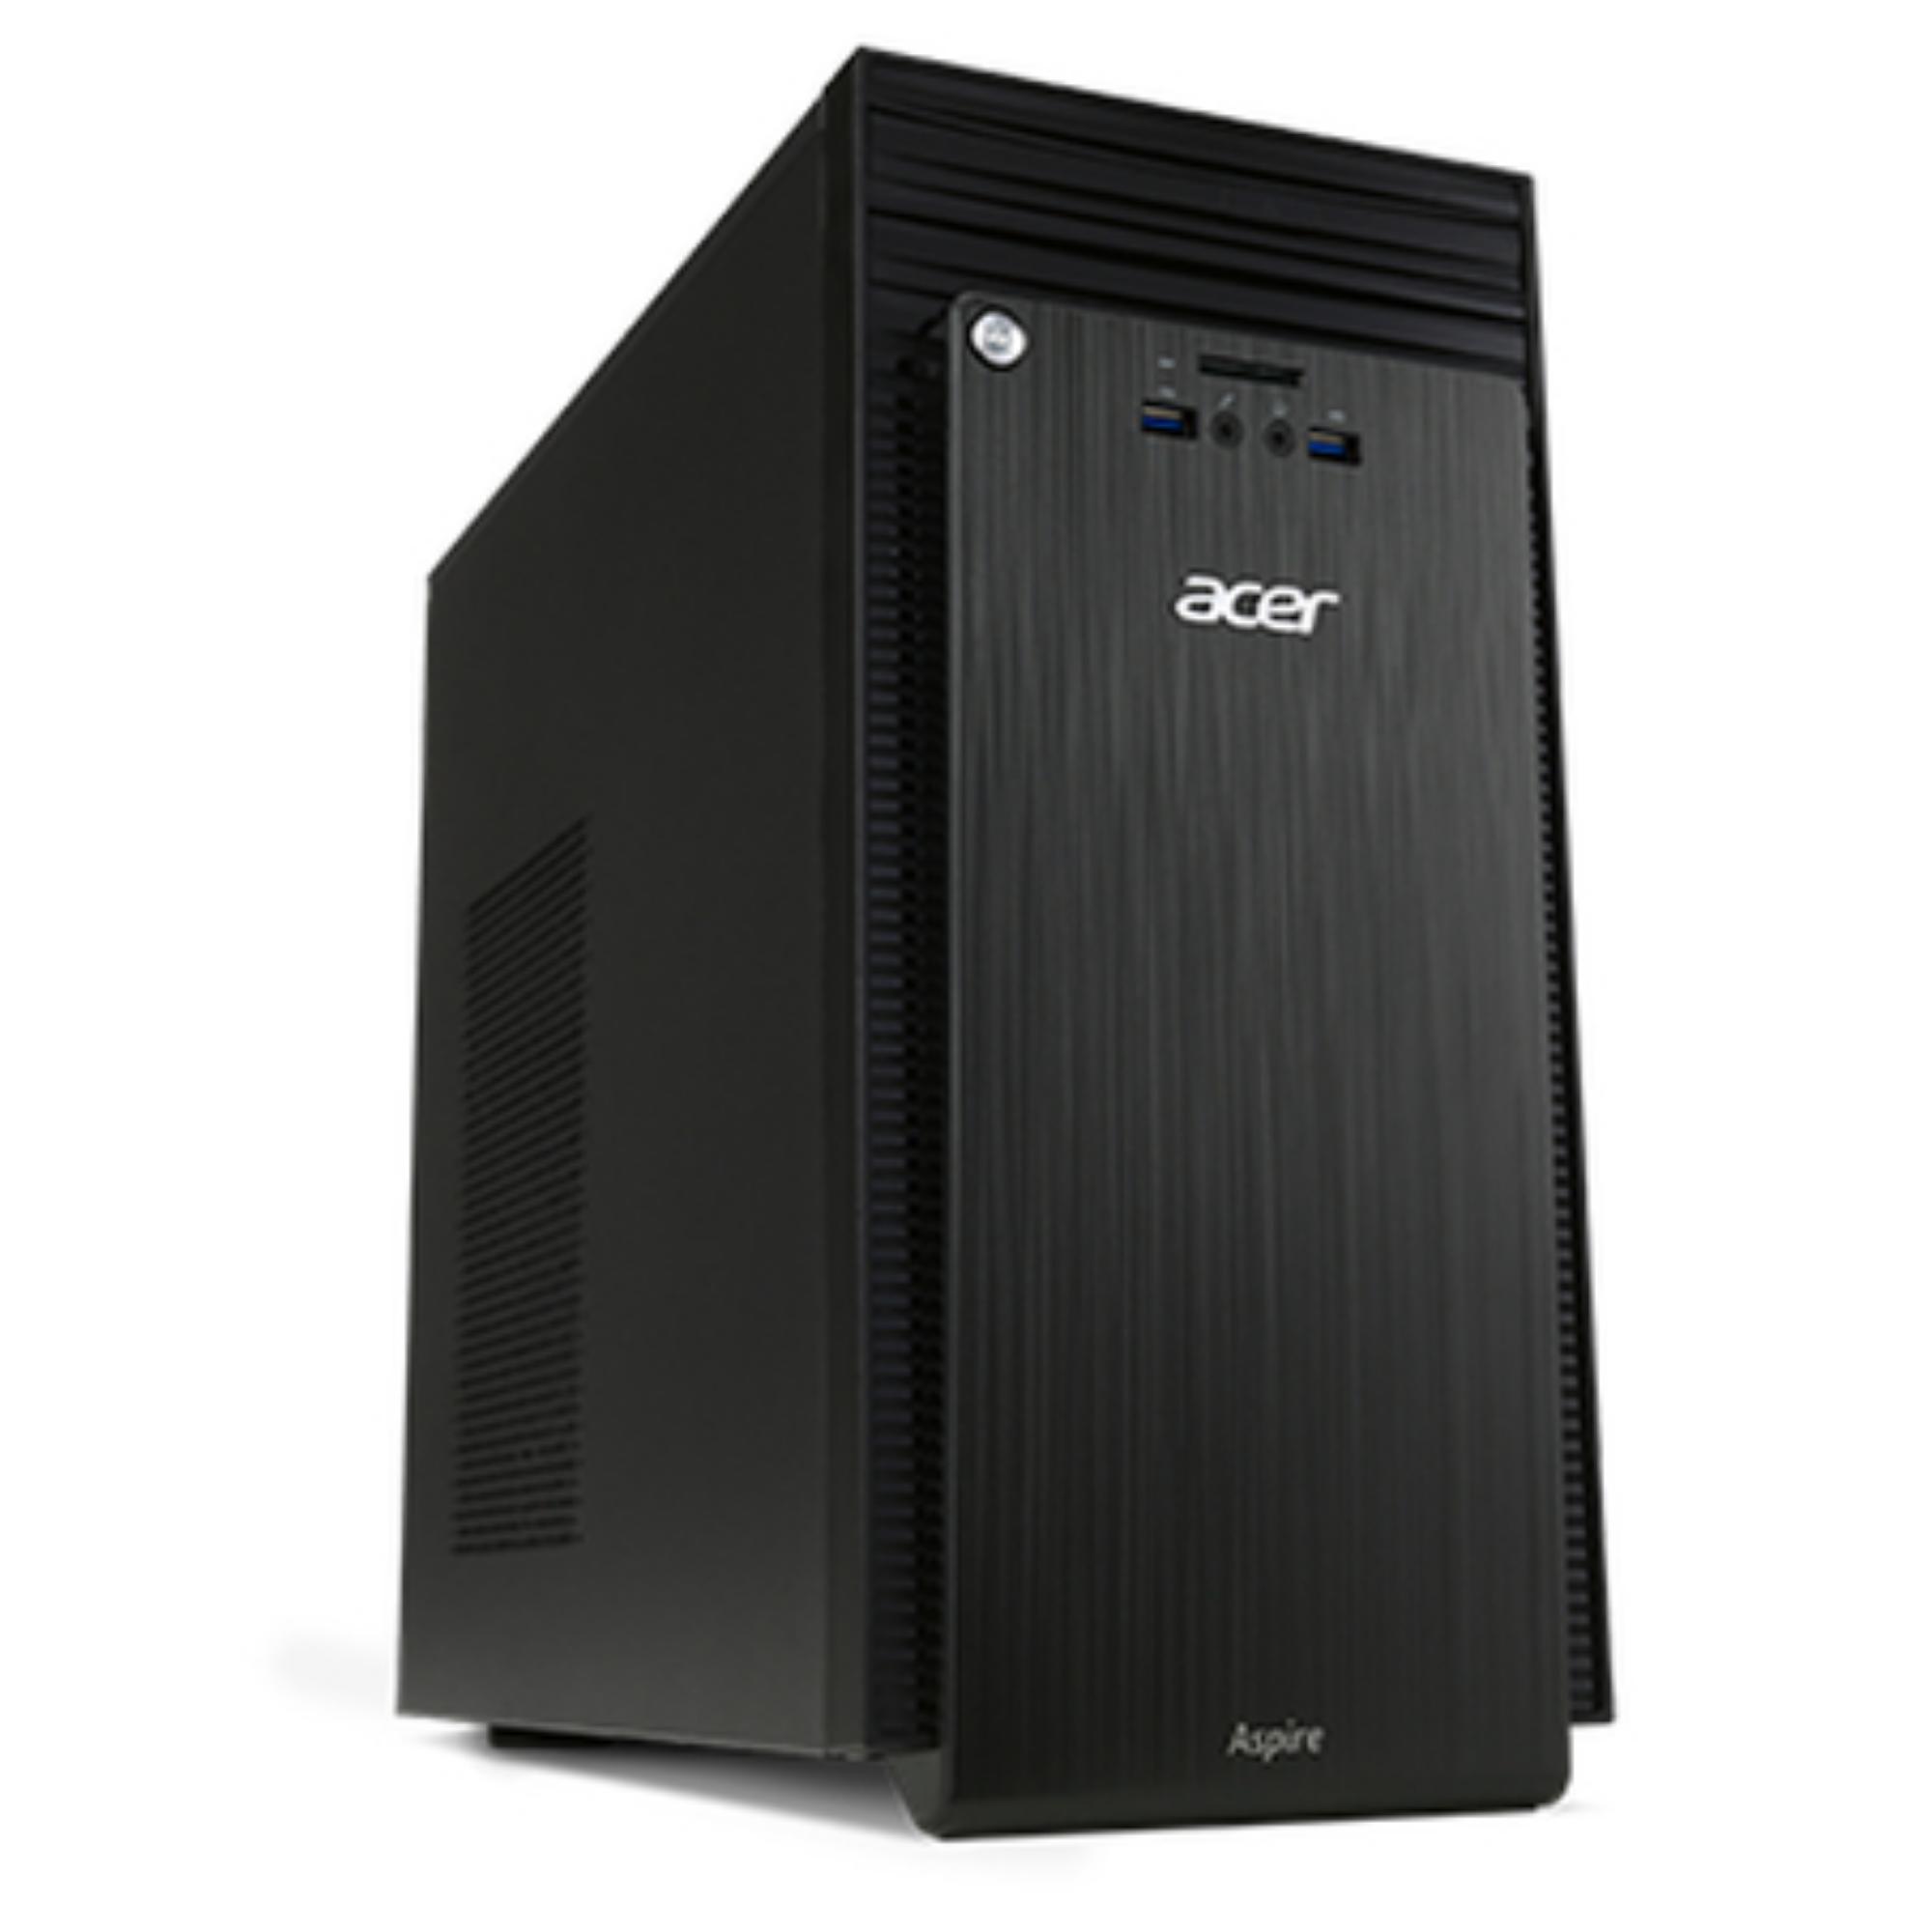 ACER ASPIRE TC-220 / AMD A10-7800 / 1TB HDD / 16GB / RADEON R7 / W10P